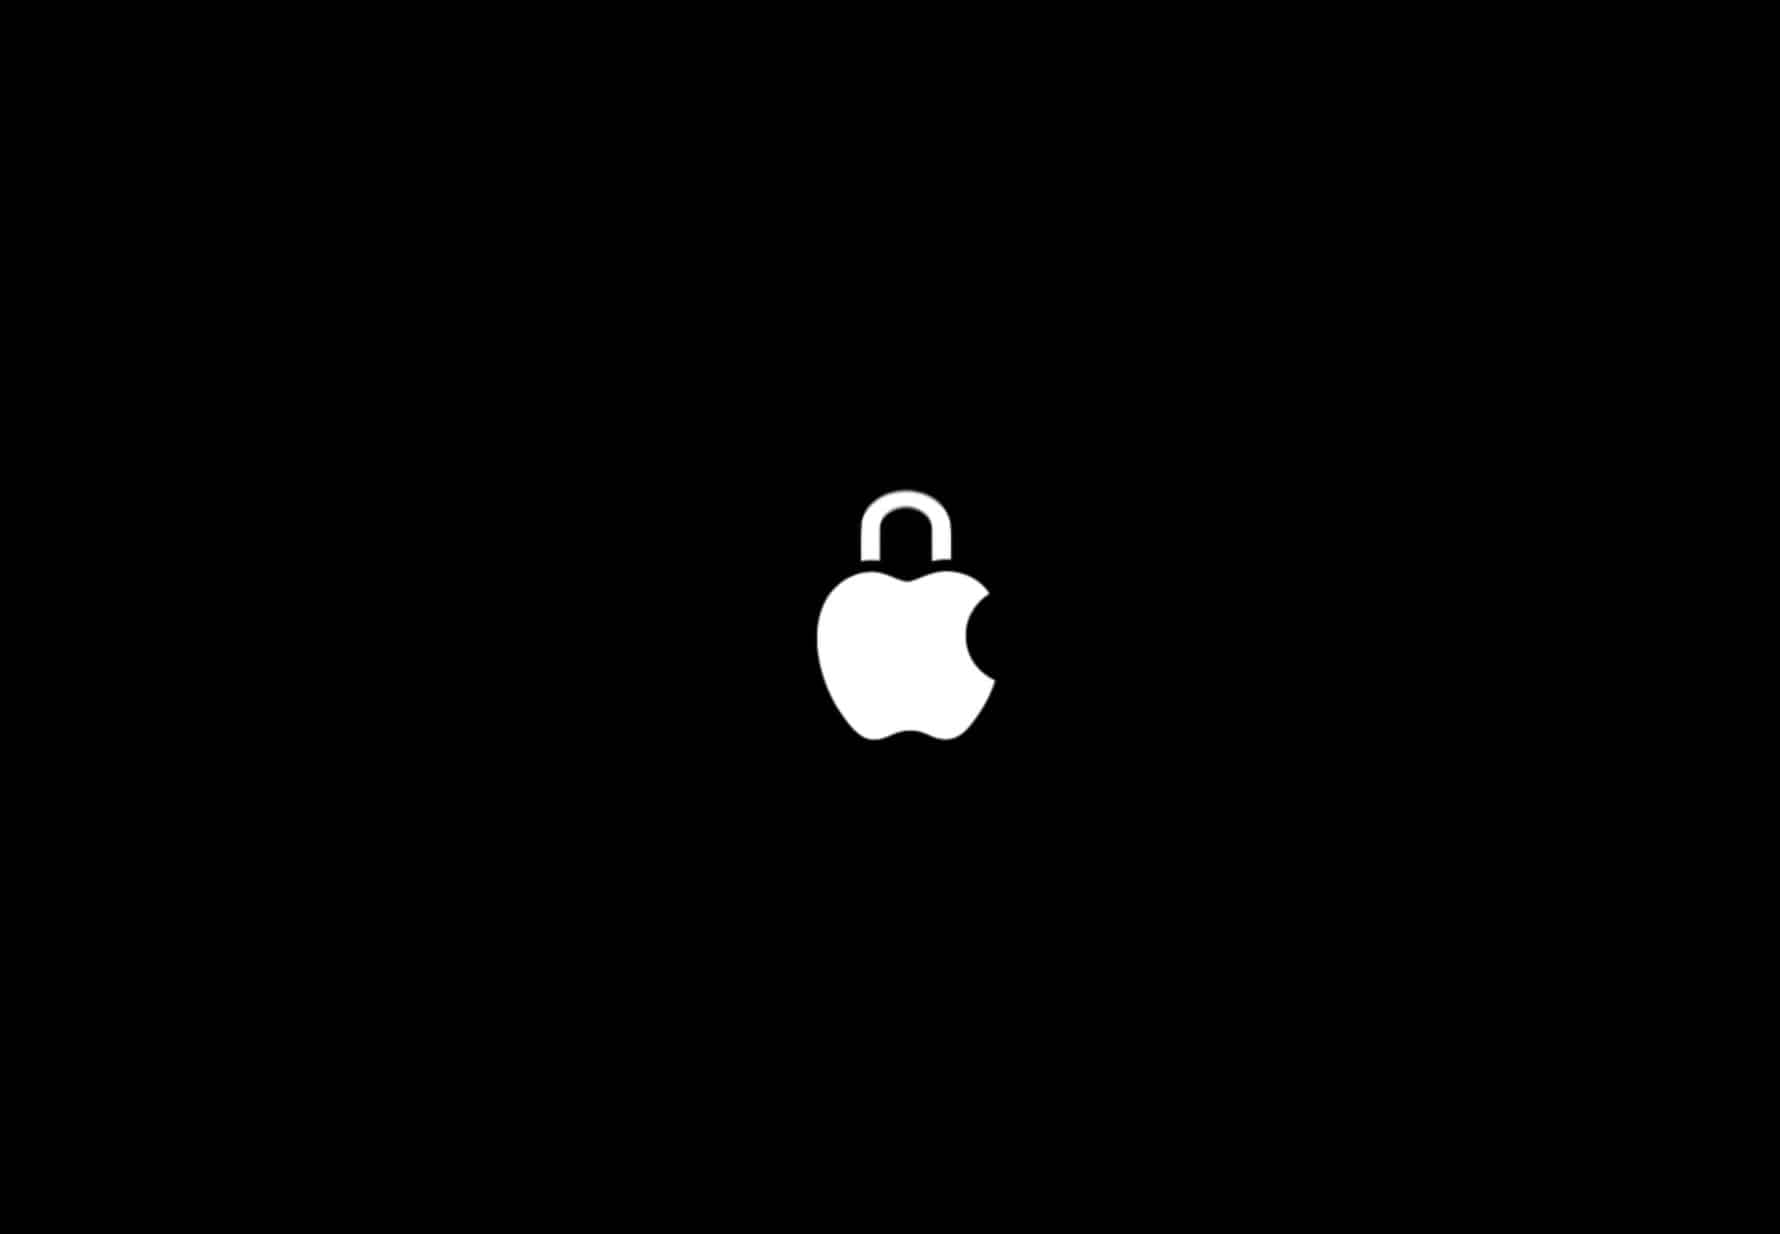 Image du logo apple sous forme de cadenas pour illustrer sa politique de confidentialité.